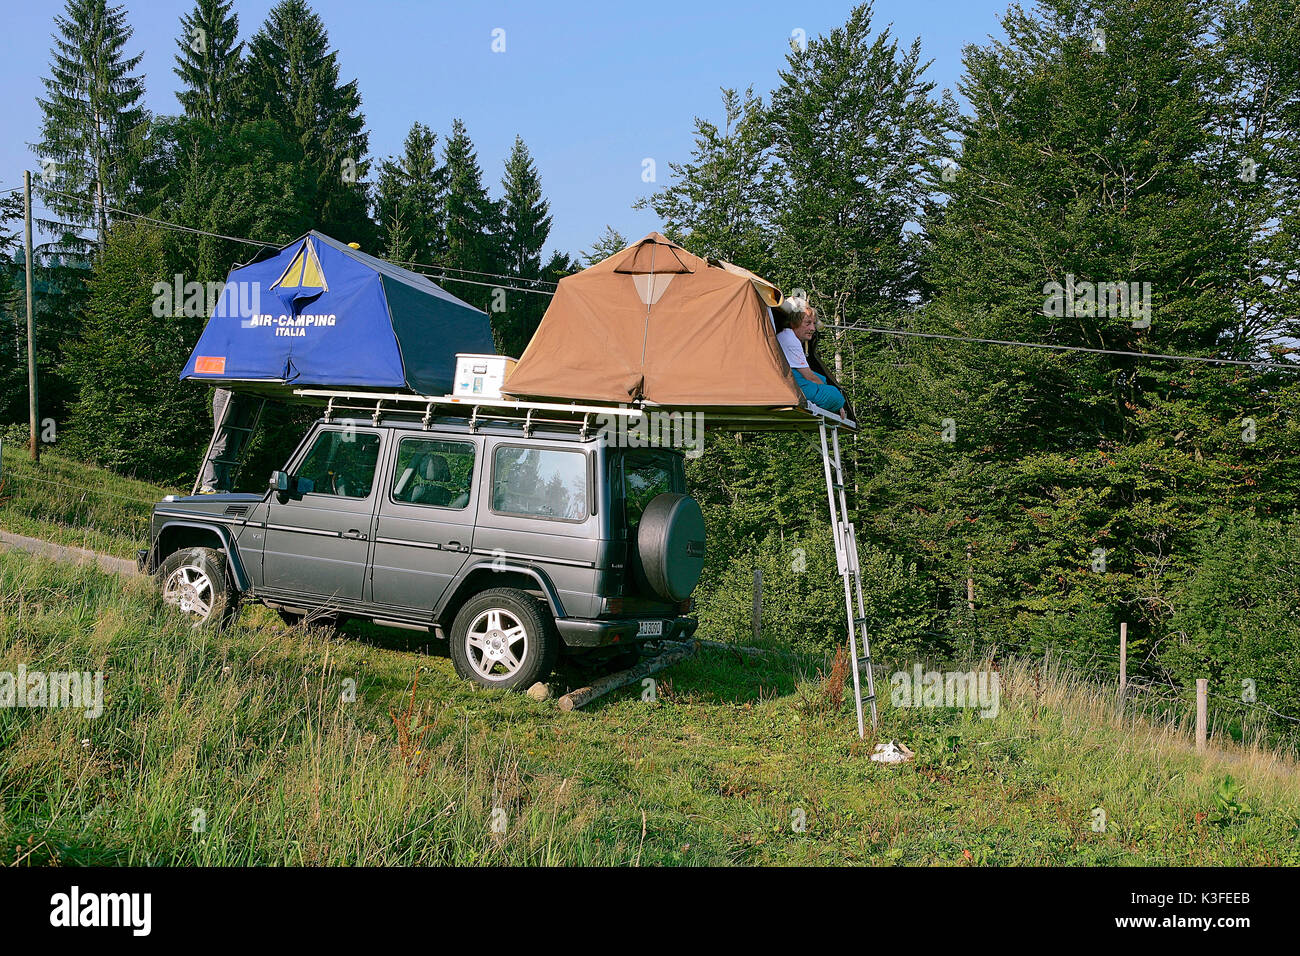 Dach Zelt auf sport utility vehicle Stockfotografie - Alamy